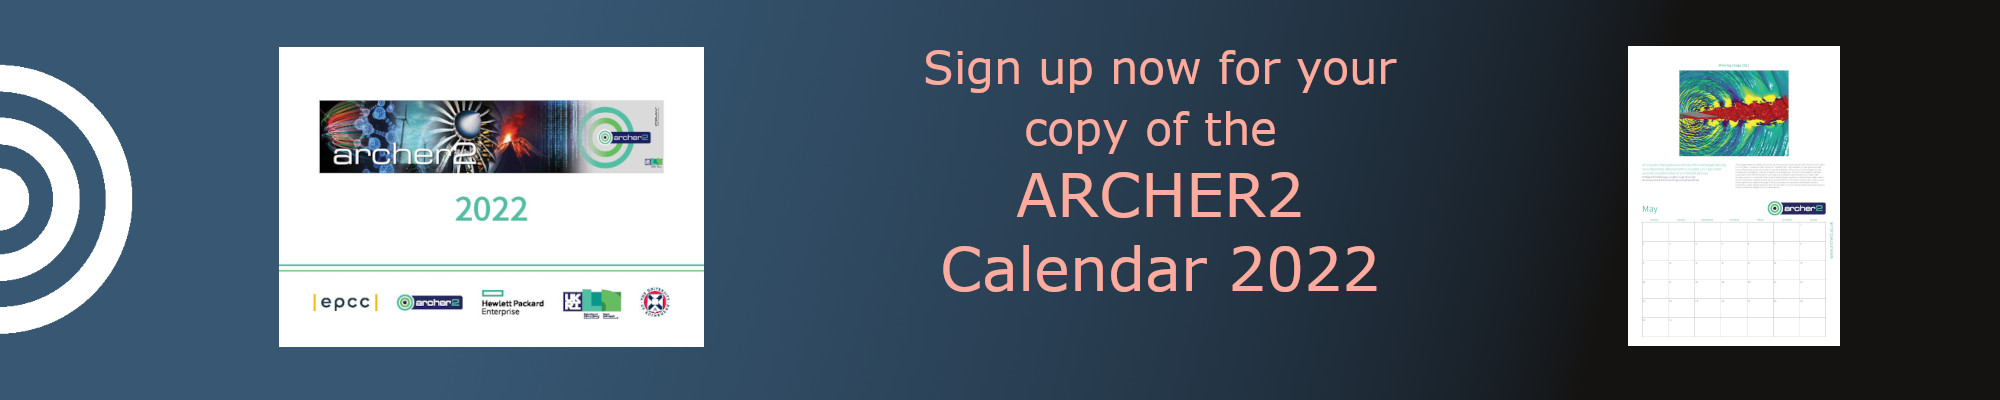 ARCHER2 calendar 2022